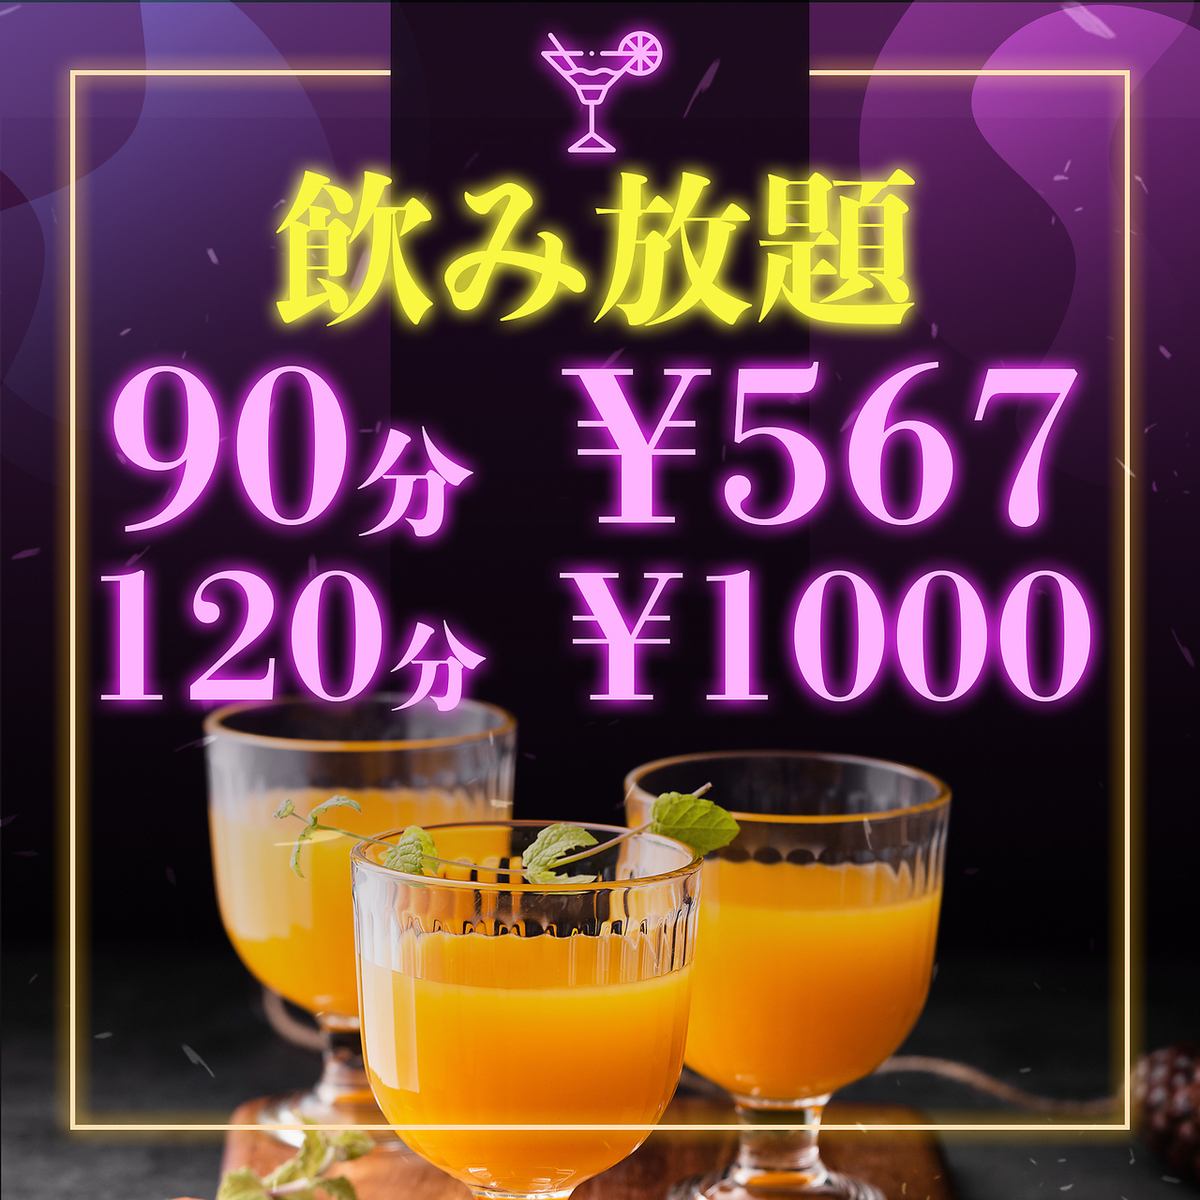 【有包間】90分鐘無限暢飲567日元、120分鐘無限暢飲1000日元♪